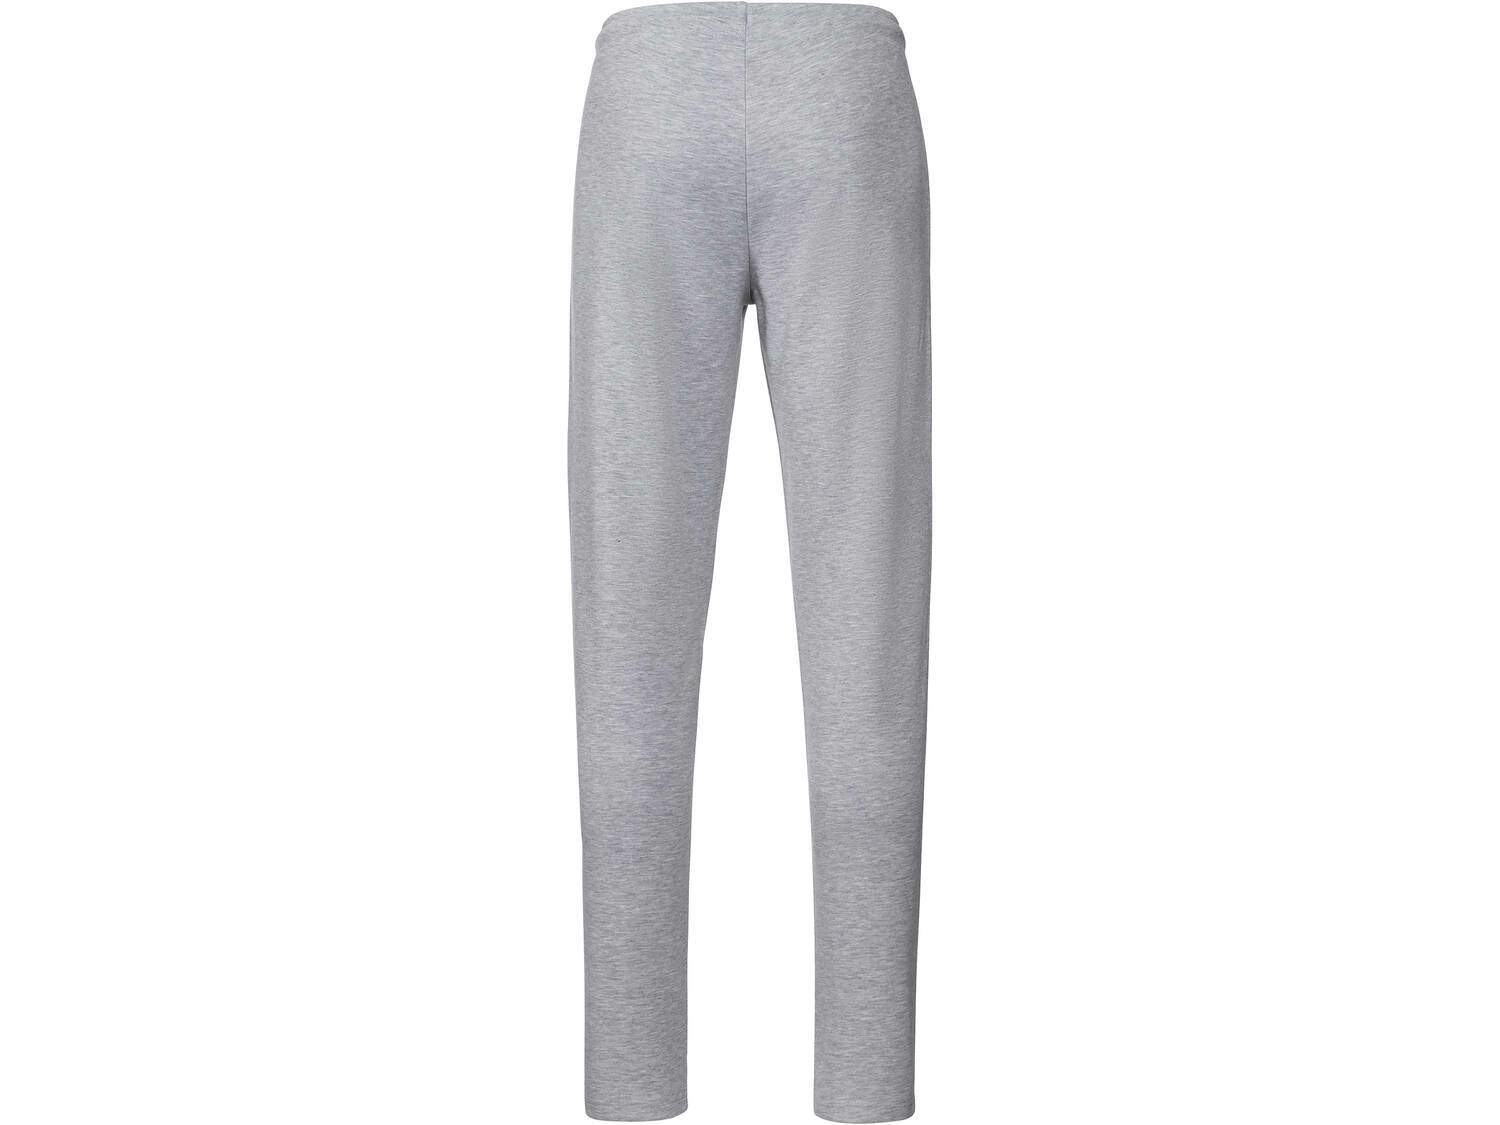 Spodnie dresowe z bawełną Crivit, cena 34,99 PLN 
męskie 
- rozmiary: M-XL
- ...